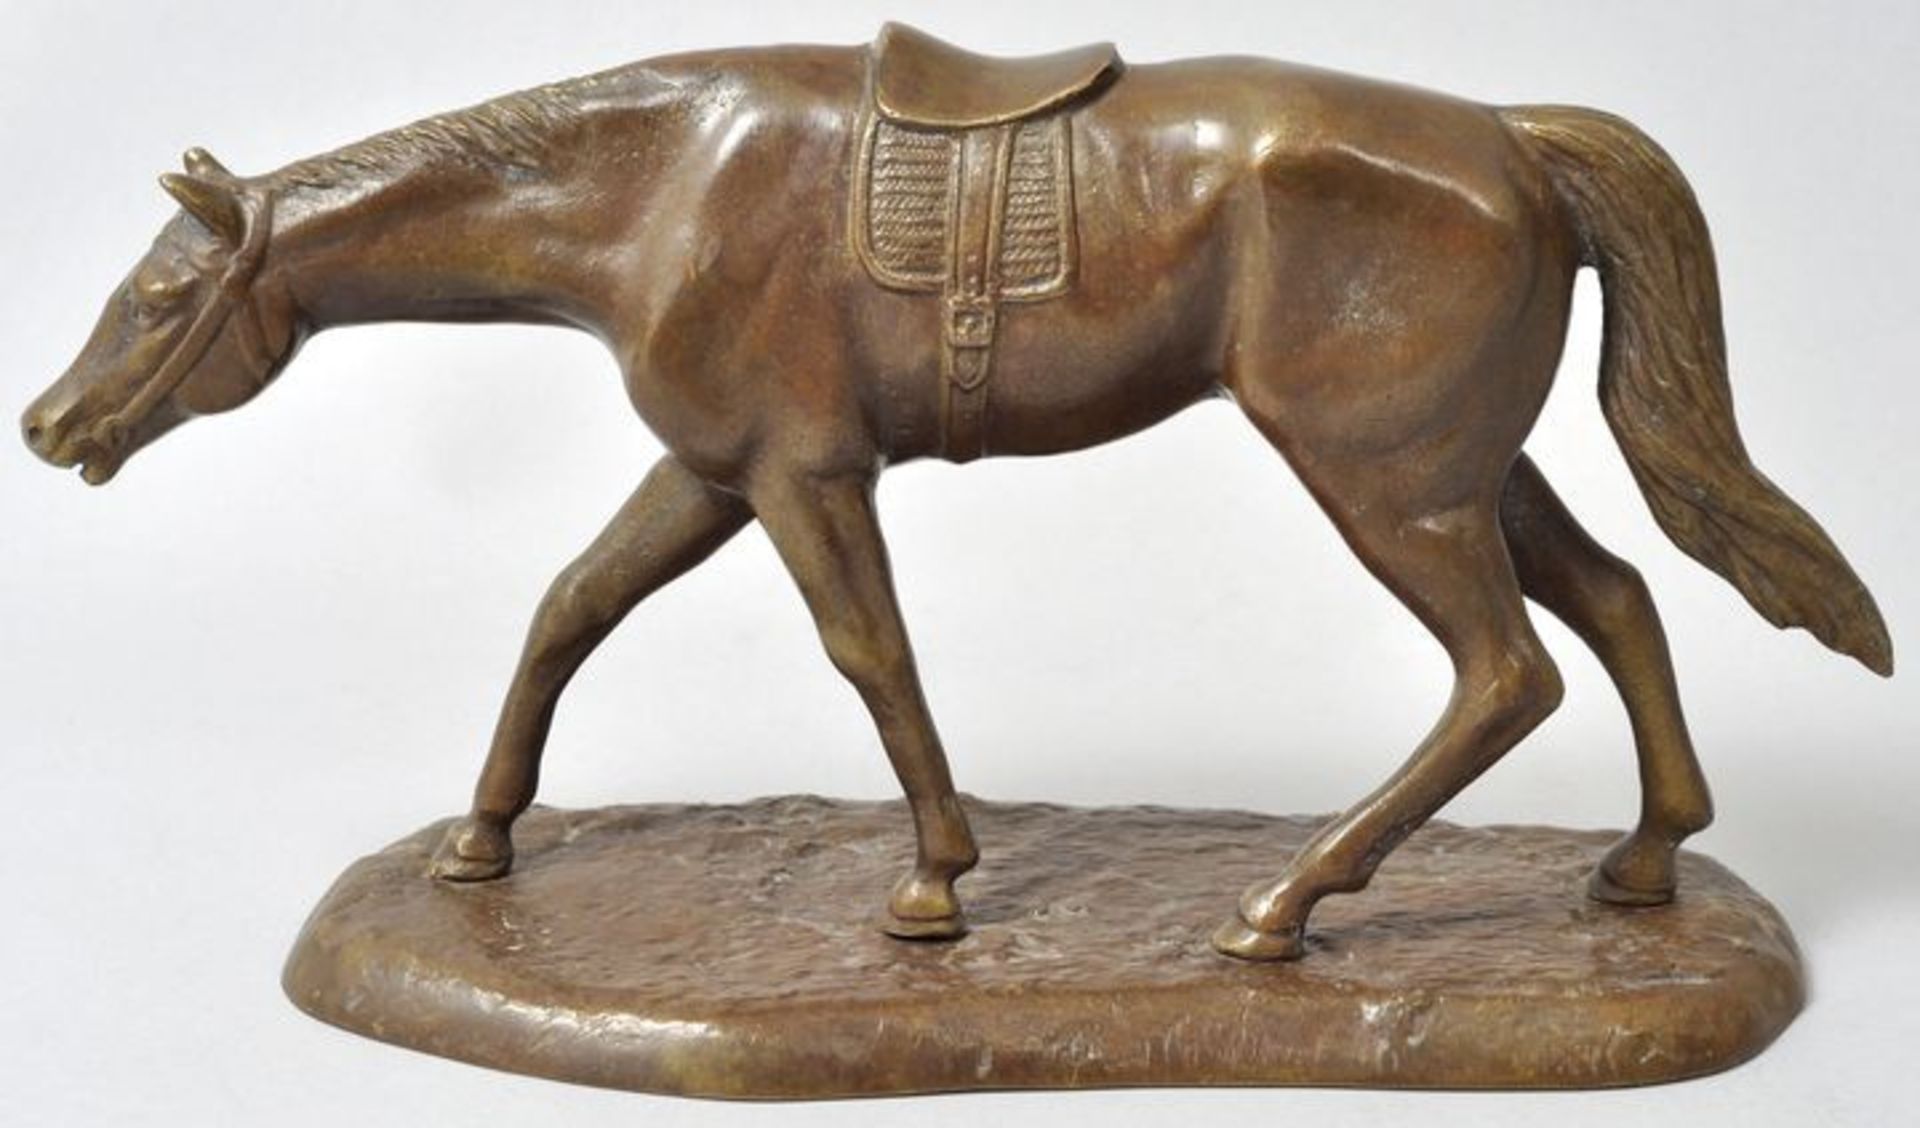 Unbekannt, Anf. 20. Jh. Rennpferd, gehend. Bronze, patiniert, H. 14,5 cm - Bild 2 aus 7